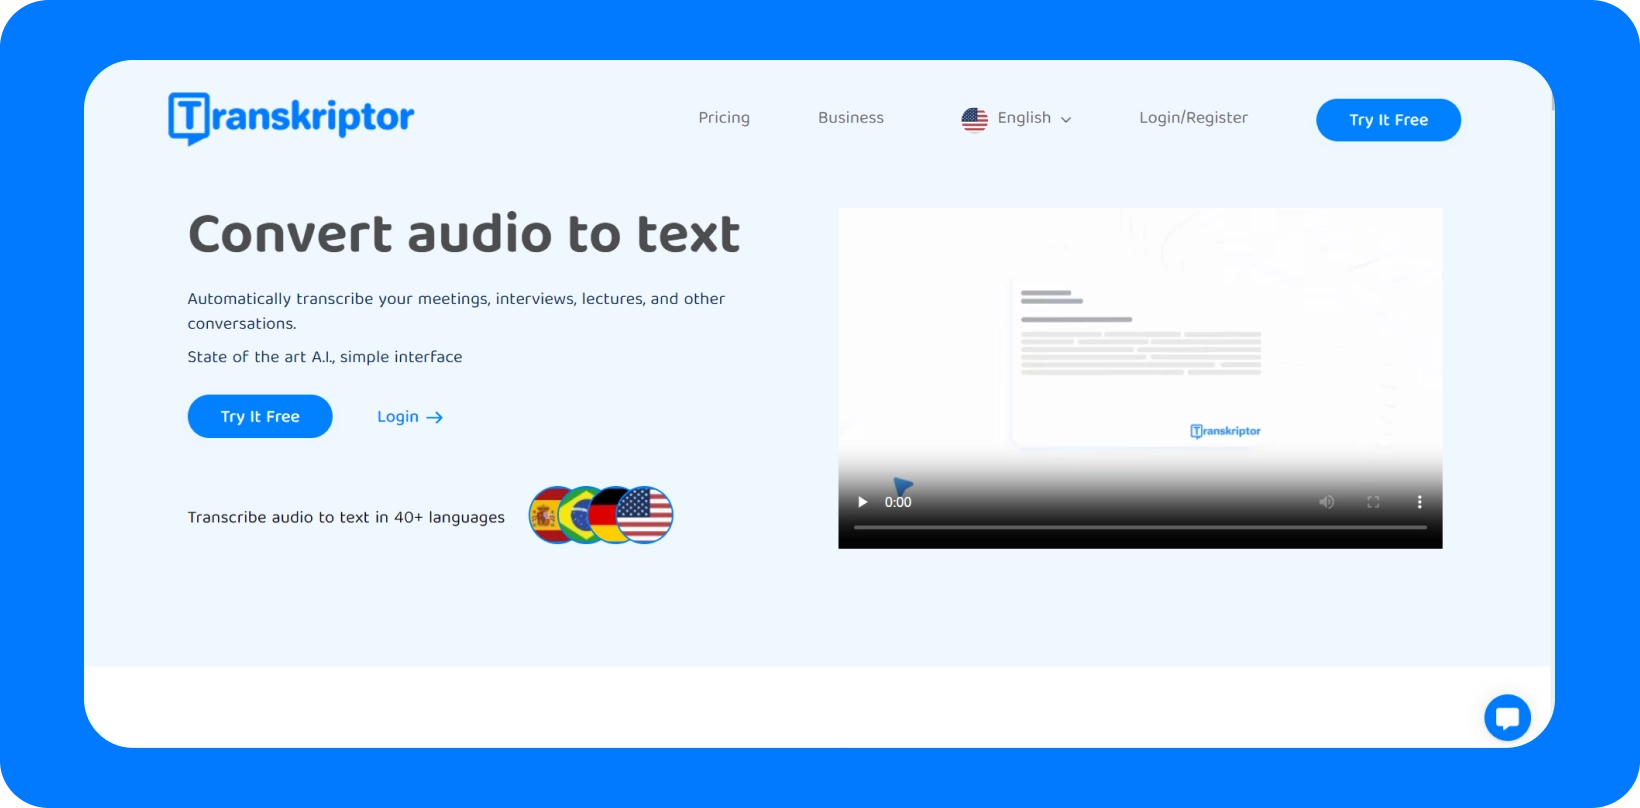 Interfaccia Transkriptor che mostra il servizio "Converti audio in testo" con supporto multilingue.